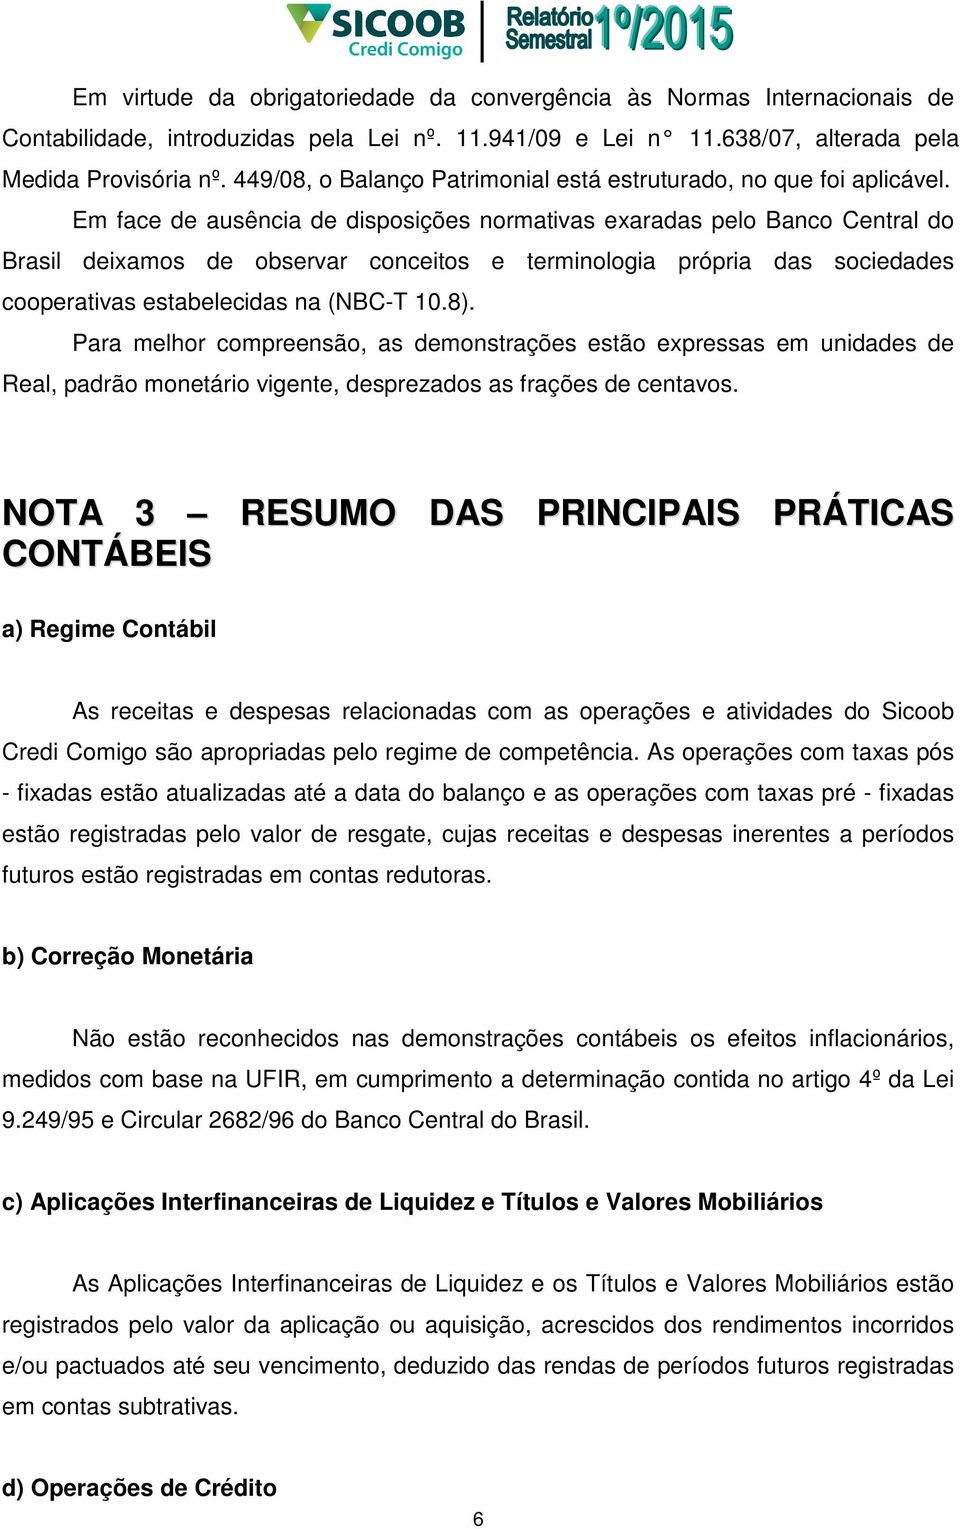 Em face de ausência de disposições normativas exaradas pelo Banco Central do Brasil deixamos de observar conceitos e terminologia própria das sociedades cooperativas estabelecidas na (NBC-T 10.8).